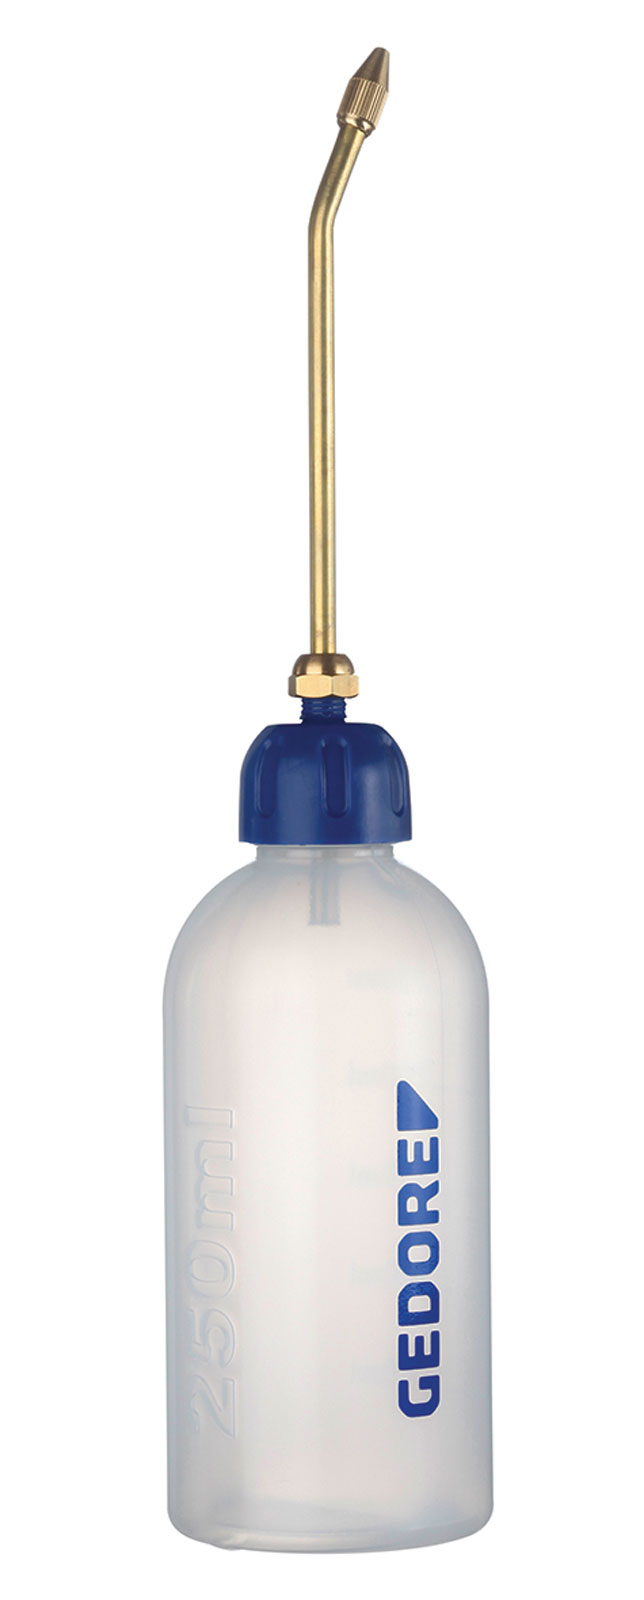 298-00 Ölspritzkanne aus Plastik, 250 ml online kaufen - im van beusekom  Onlineshop